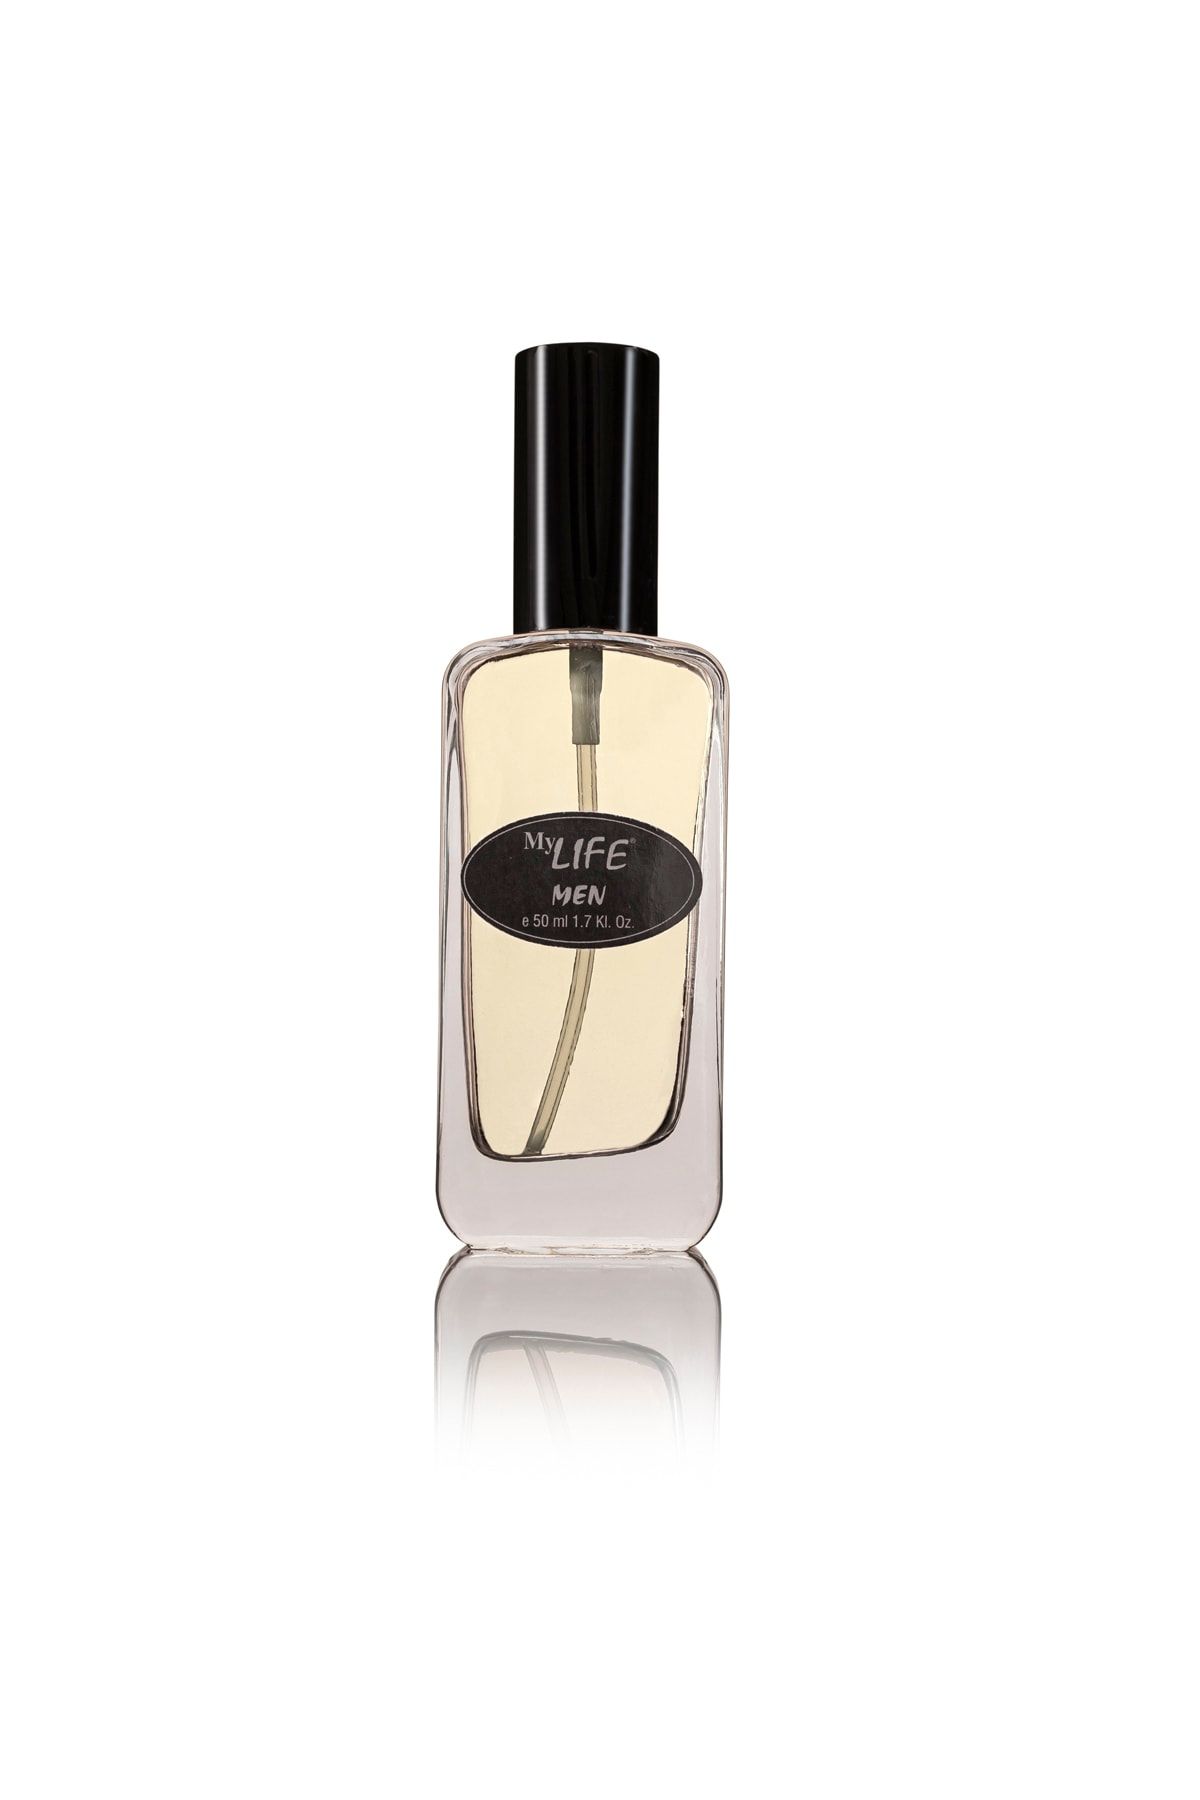 My Life Parfume Açık Erkek Parfumu 0.50.ml Versaje Eros E-22